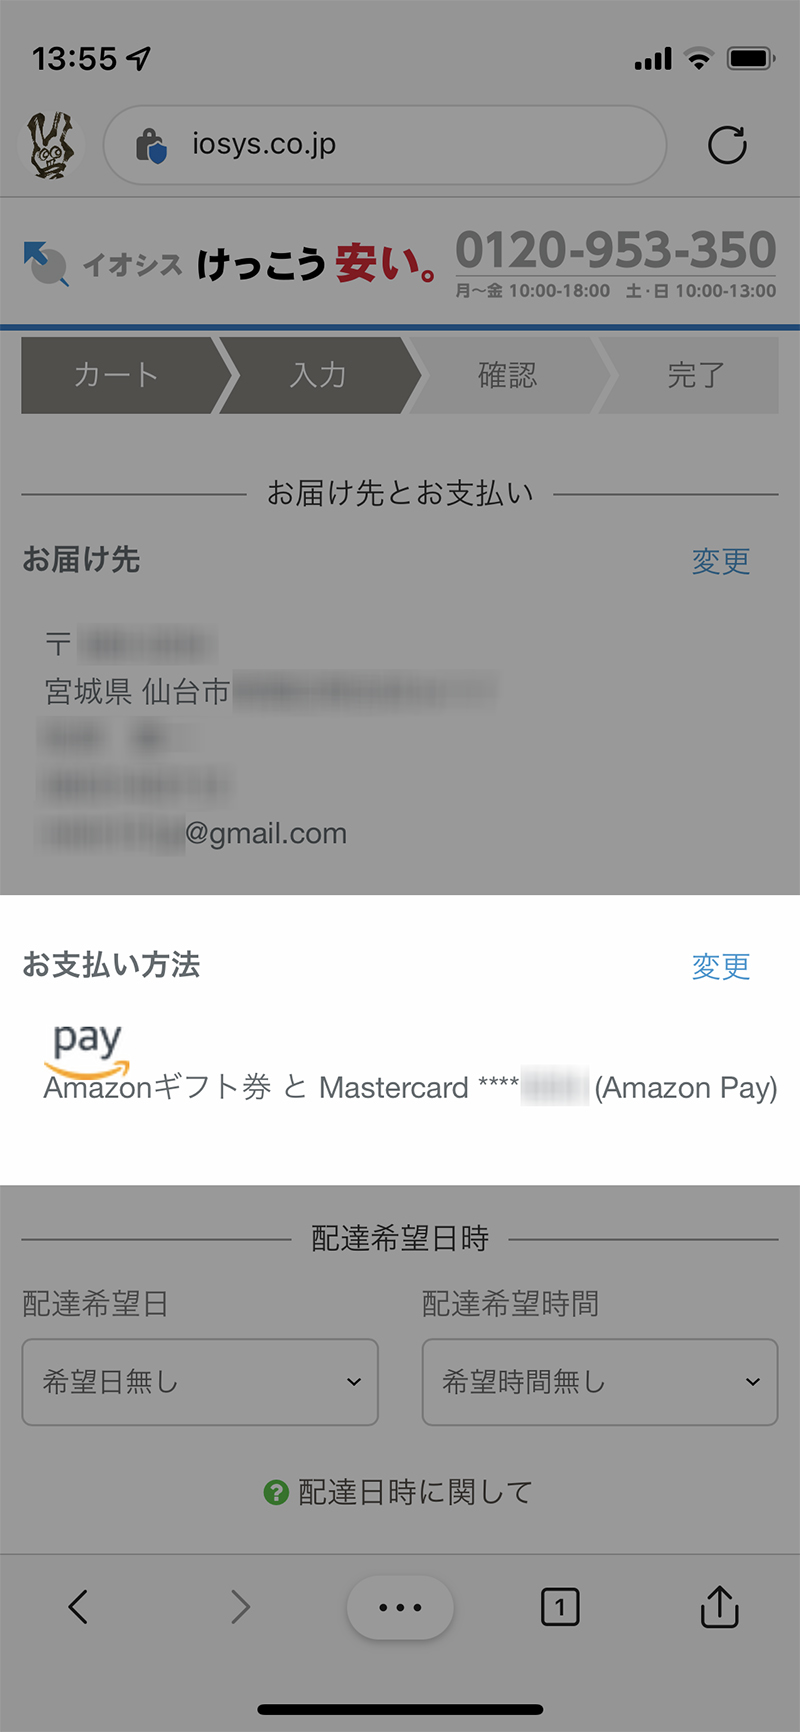 イオシス通販での支払いにAmazon Pay（Amazonギフト券）を利用